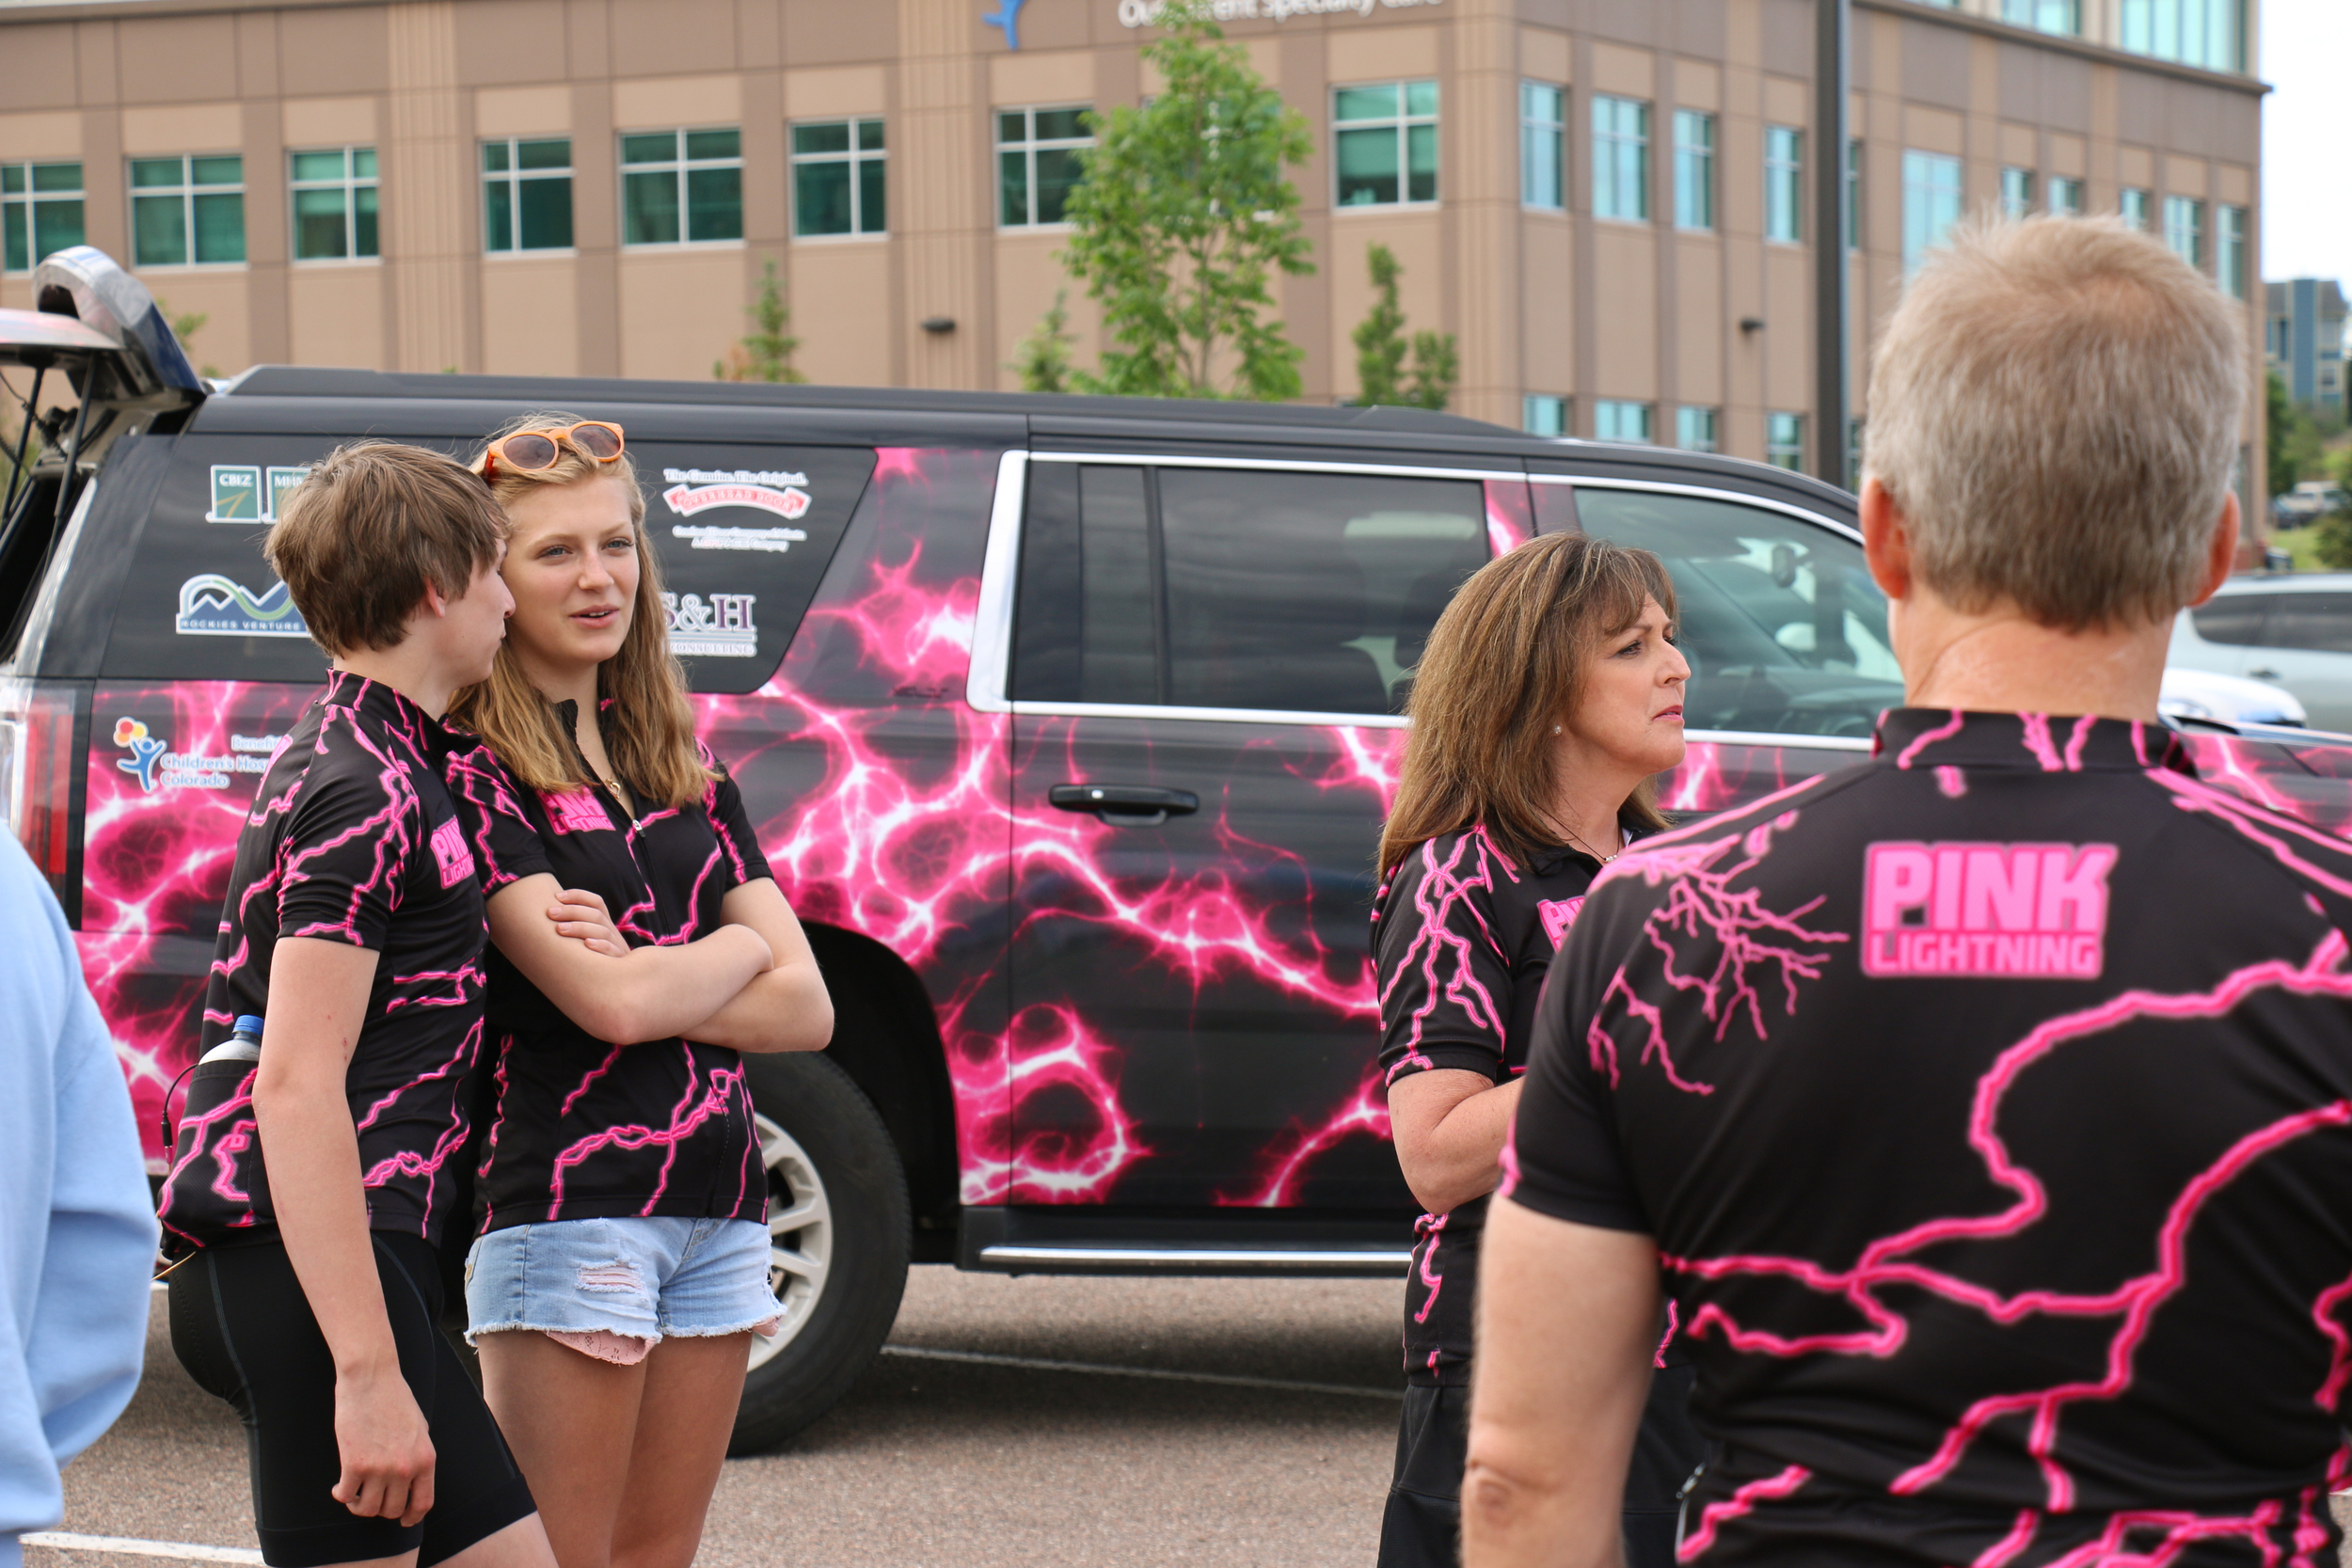 The Pink Lightning Team arrives